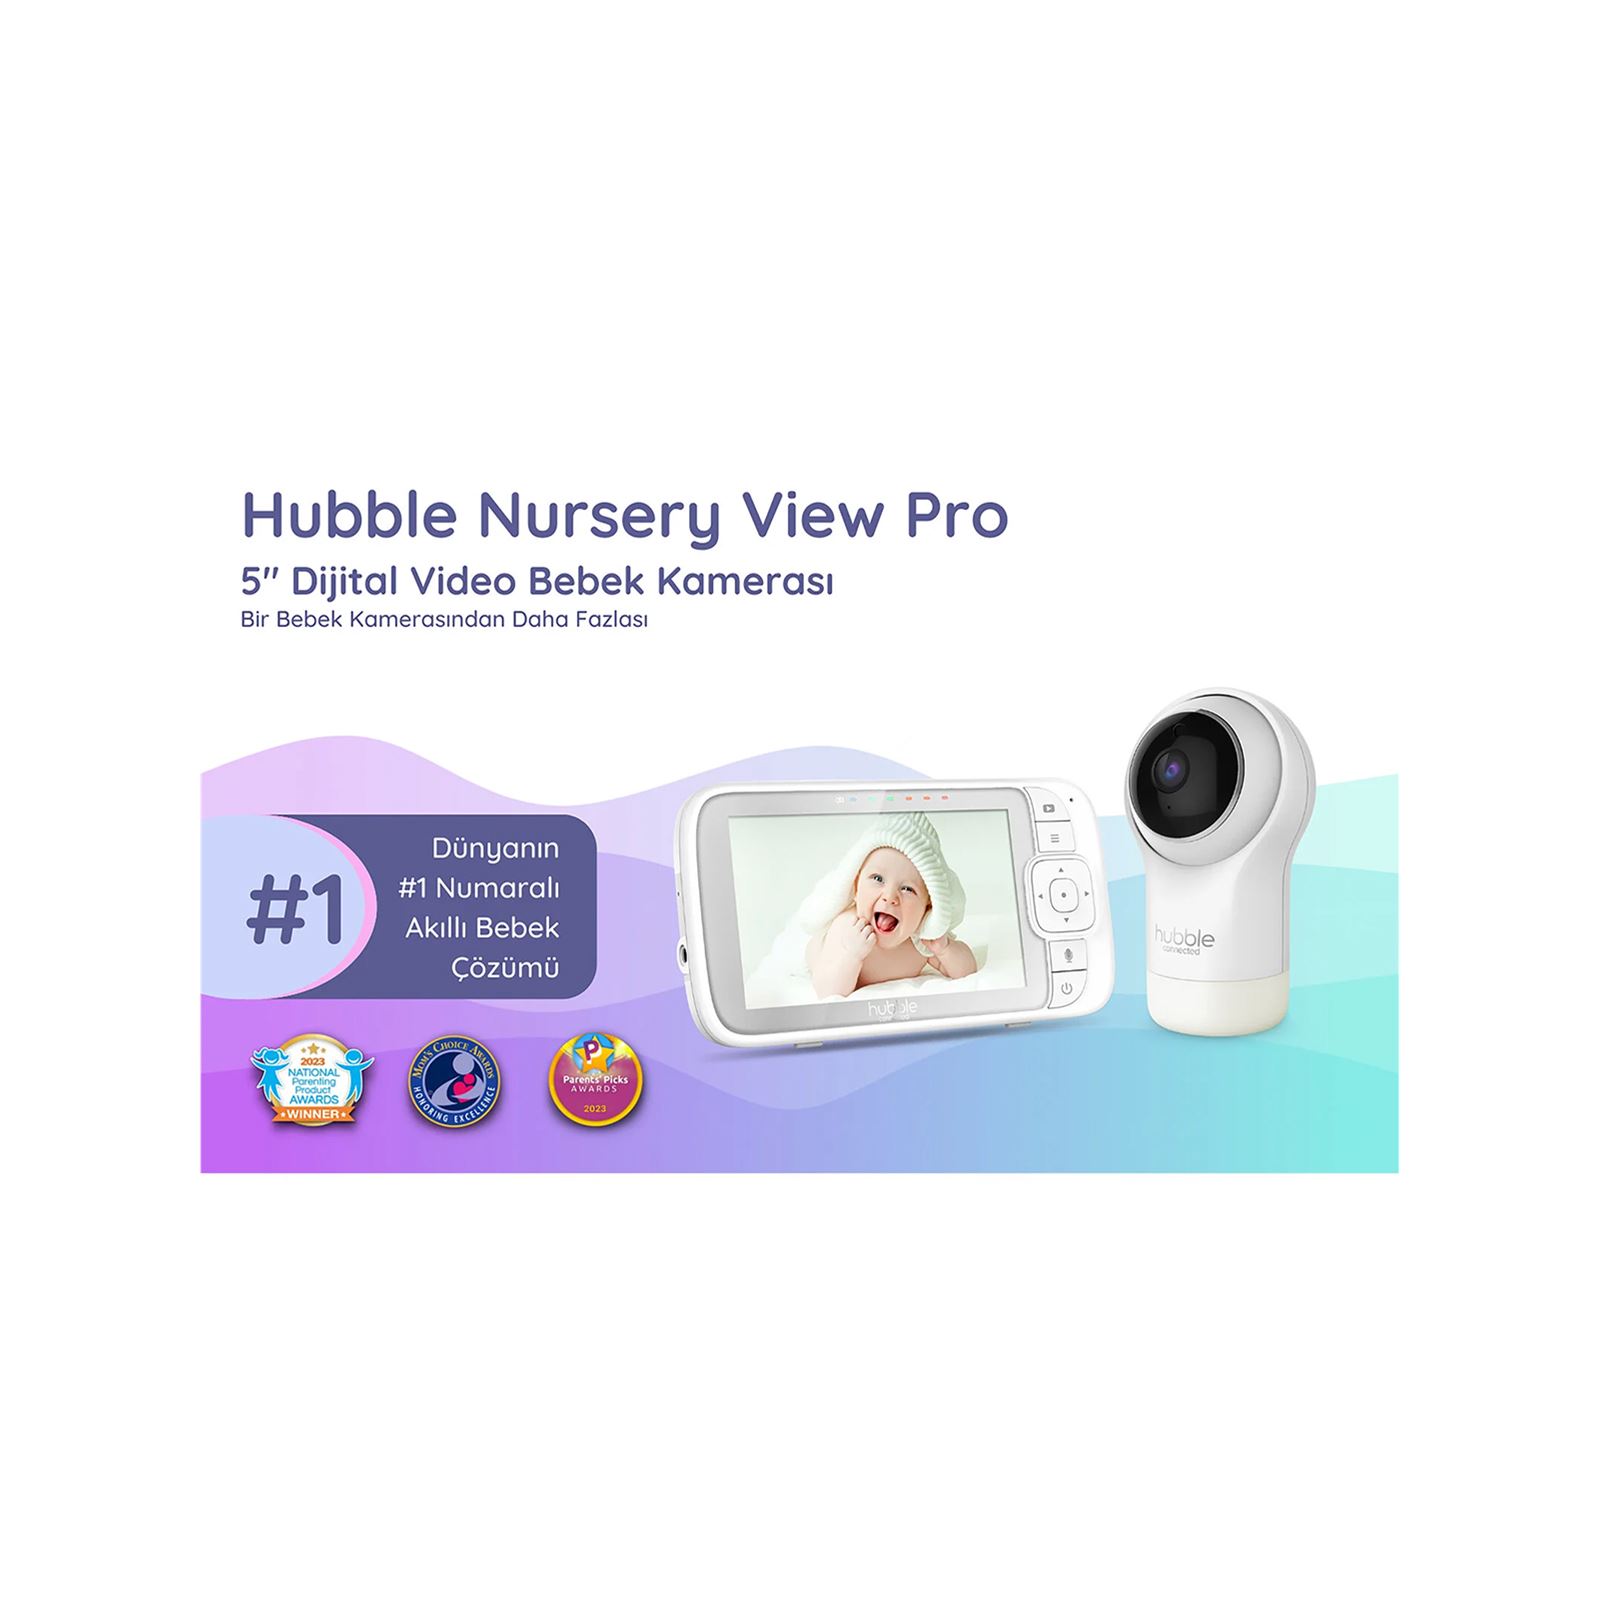 Hubble Nursery View Pro 5